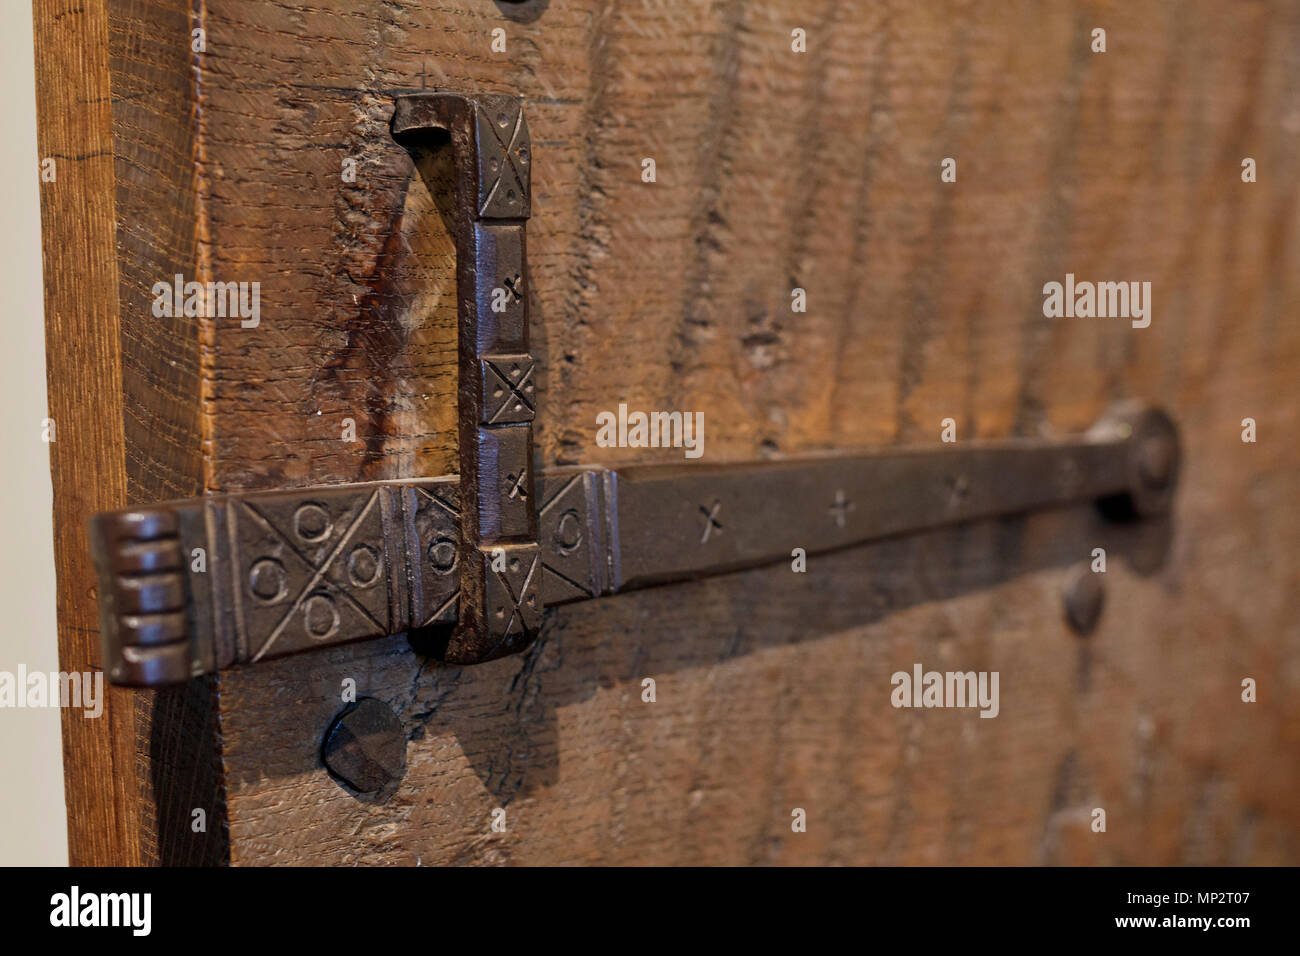 Porta Medioevale di cattura con decorazioni a motivi geometrici, porta in legno di quercia. Immagine con limitata profondità di campo. Foto Stock